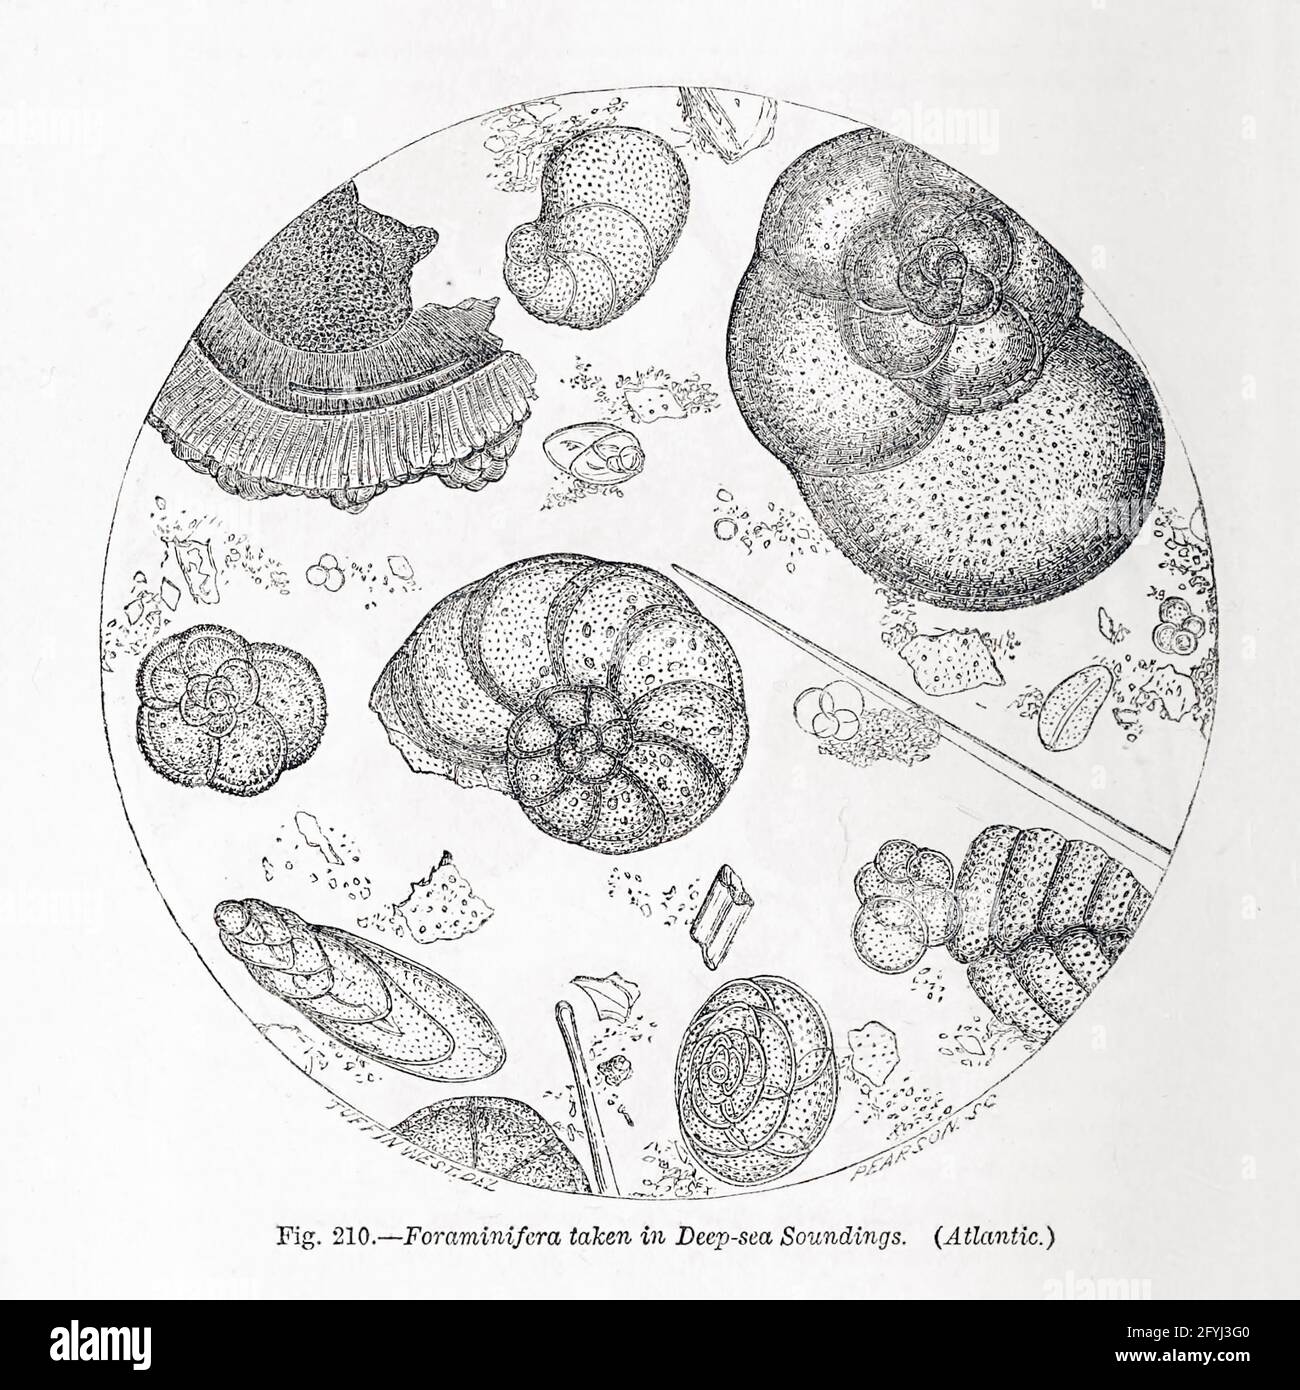 Zellen unter dem Mikroskop aus dem Buch "das Mikroskop: Seine Geschichte, Konstruktion und Anwendung" von Hogg, Jabez, 1817-1899 Veröffentlicht in London von G. Routledge im Jahr 1869 mit Illustrationen von TUFFEN WEST Stockfoto